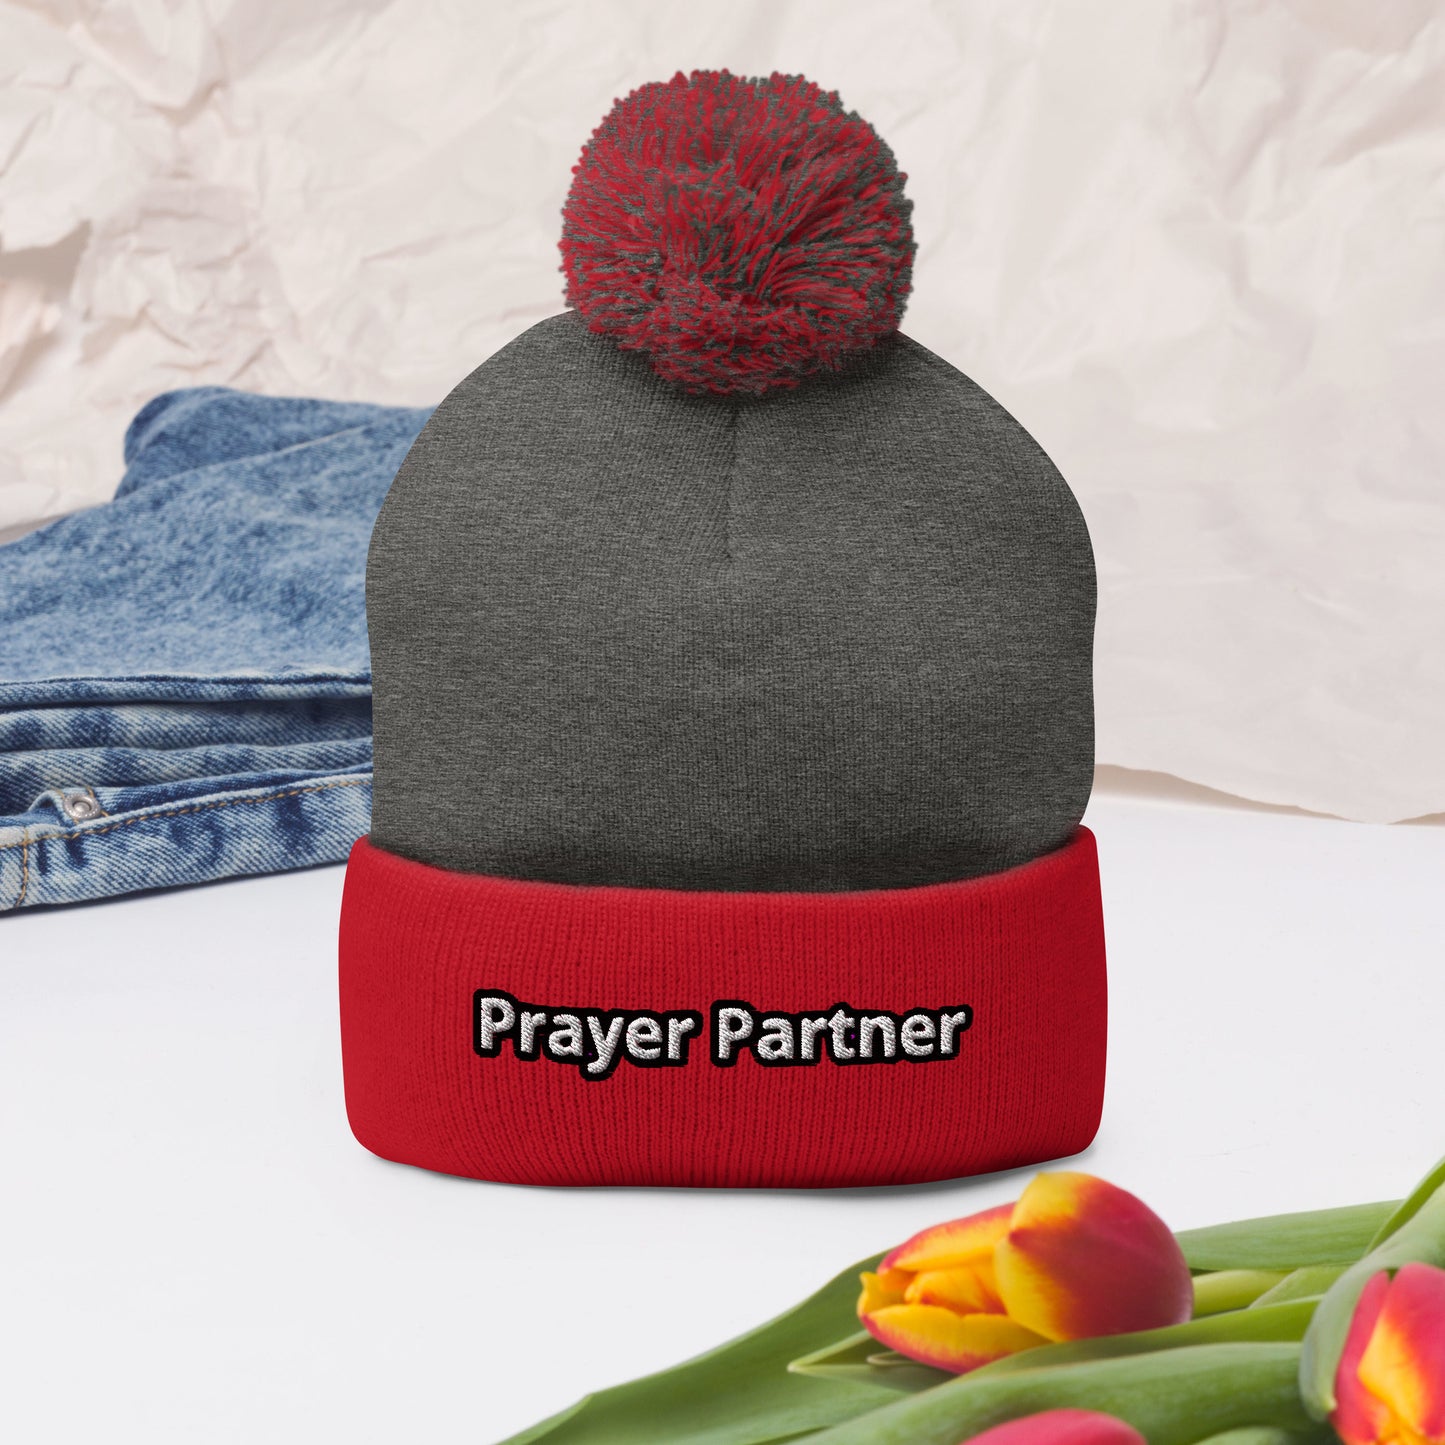 Prayer Partner Pom-Pom Beanie